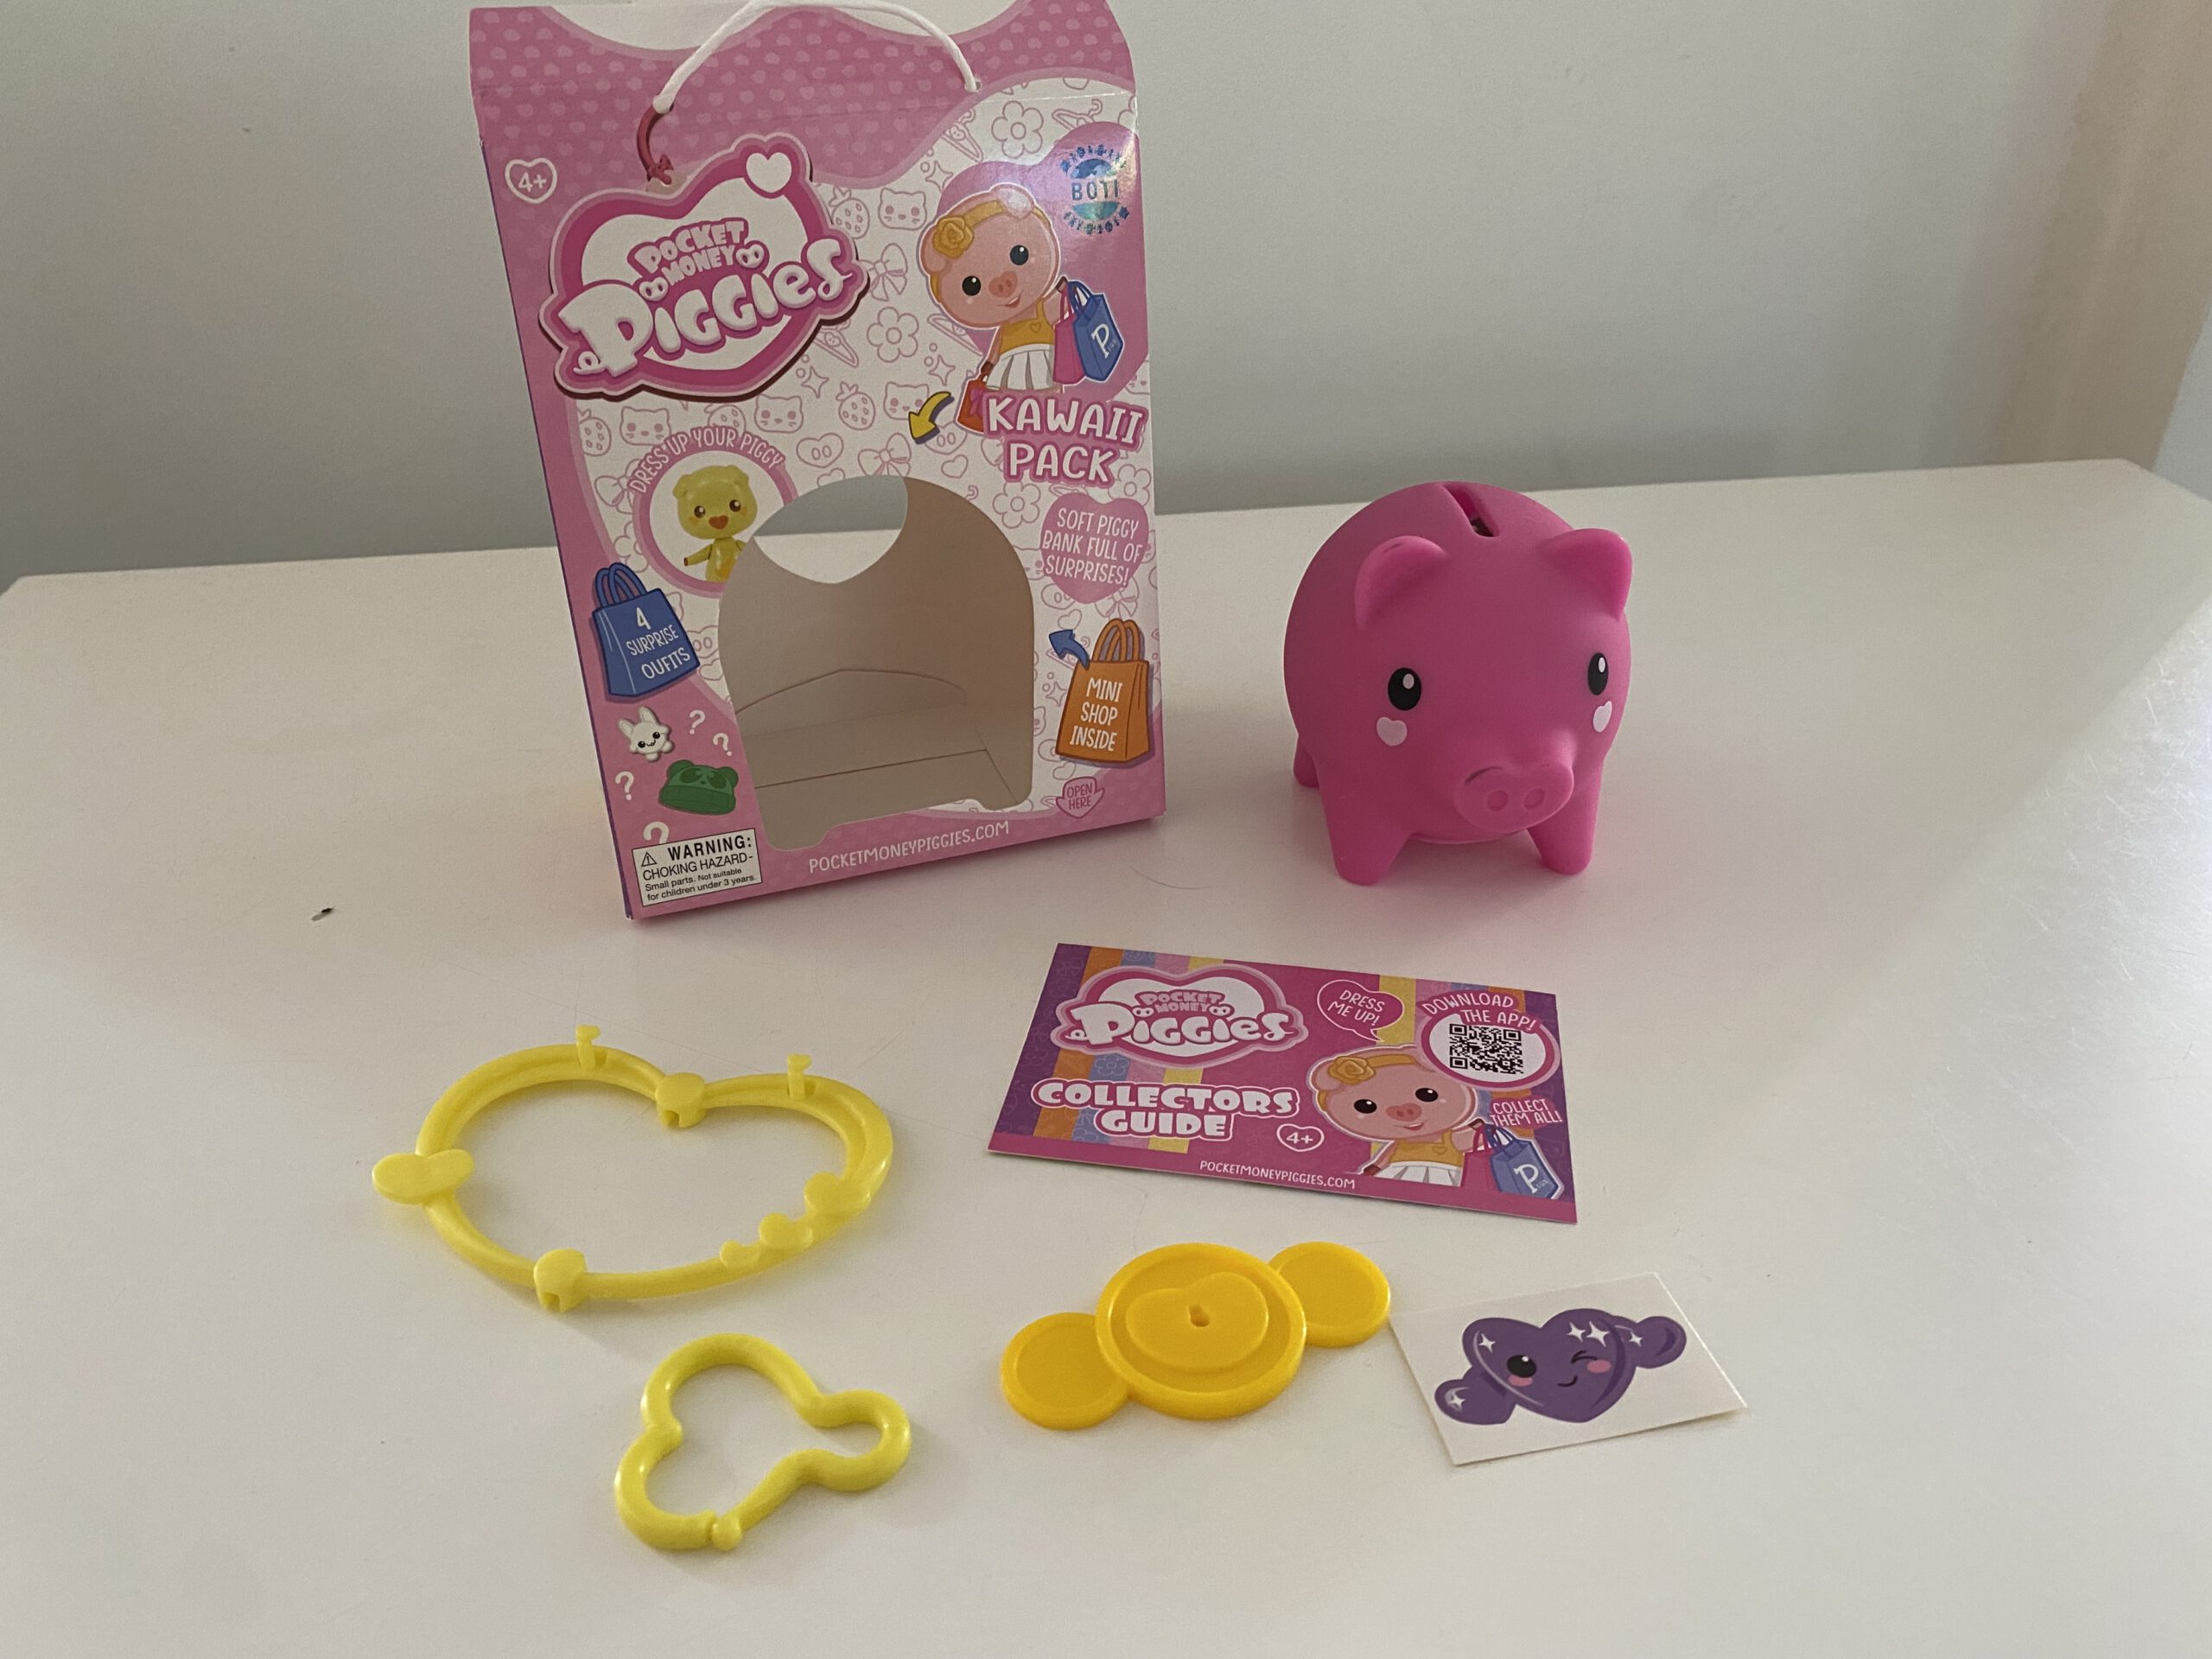 De Pocket Money Piggies zijn unieke en grappige varkentjes met mini-accessoires